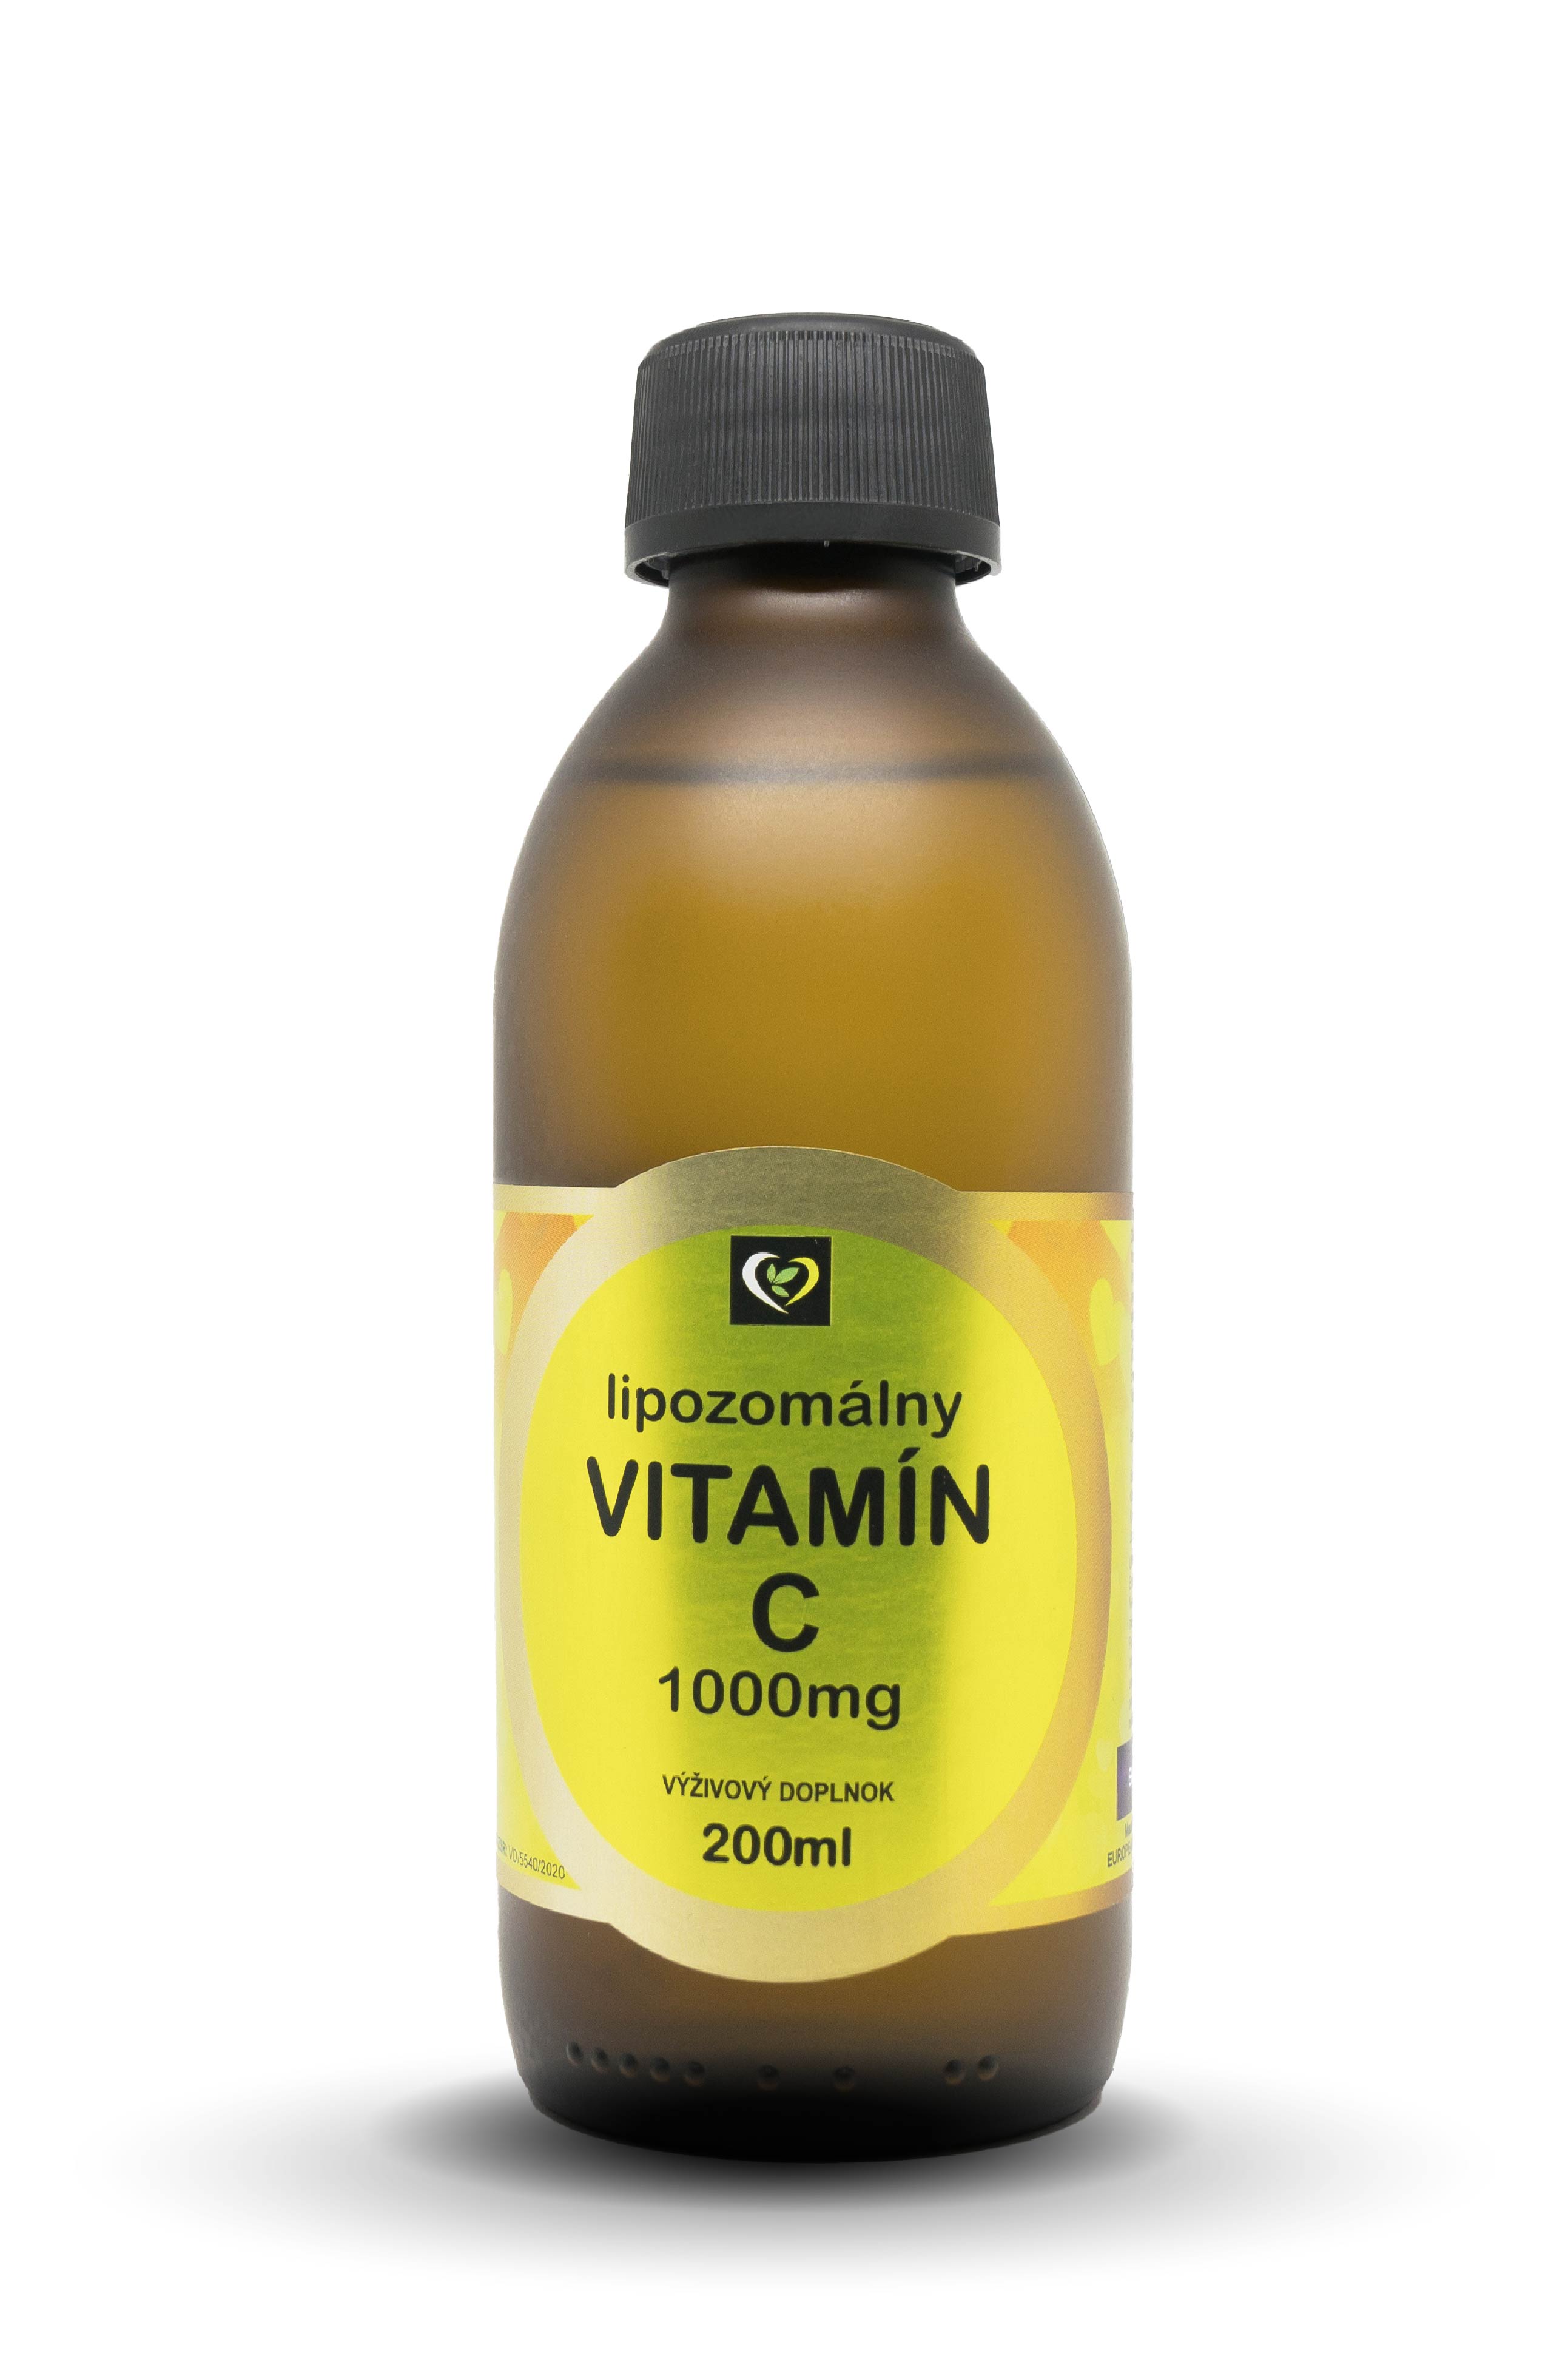 Lipozomálny vitamín C má vďaka revolučným technológiám použitým na jeho výrobu mnohonásobne vyššiu vstrebateľnosť než bežne...